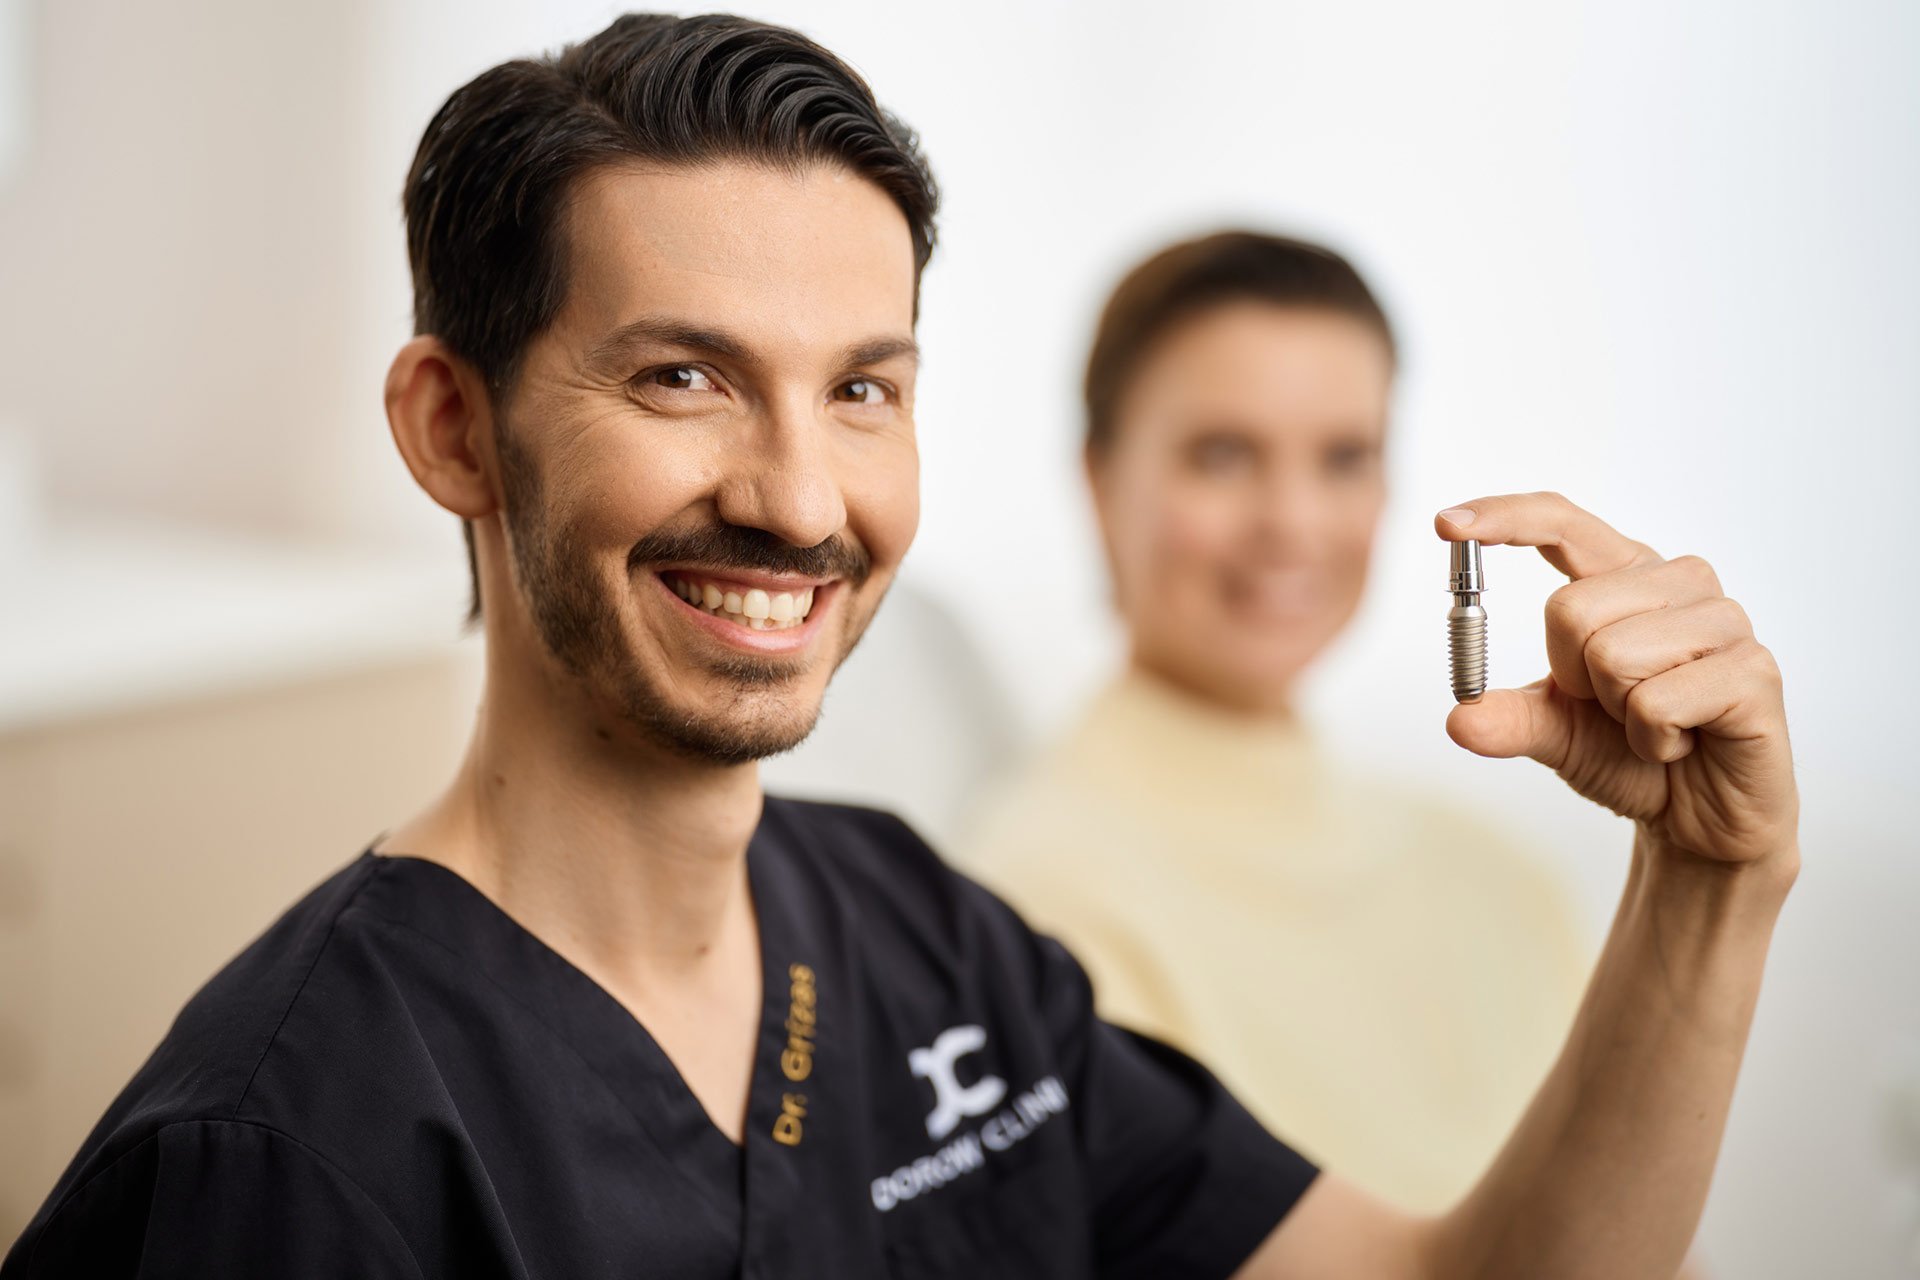 Dr Eleftherios Grizas von der Dorow Clinic mit einem Zahnimplantat / Zahnersatz in den Händen. Im Hintergrund sitzt eine Zahnpatientin auf dem Zahnarztstuhl